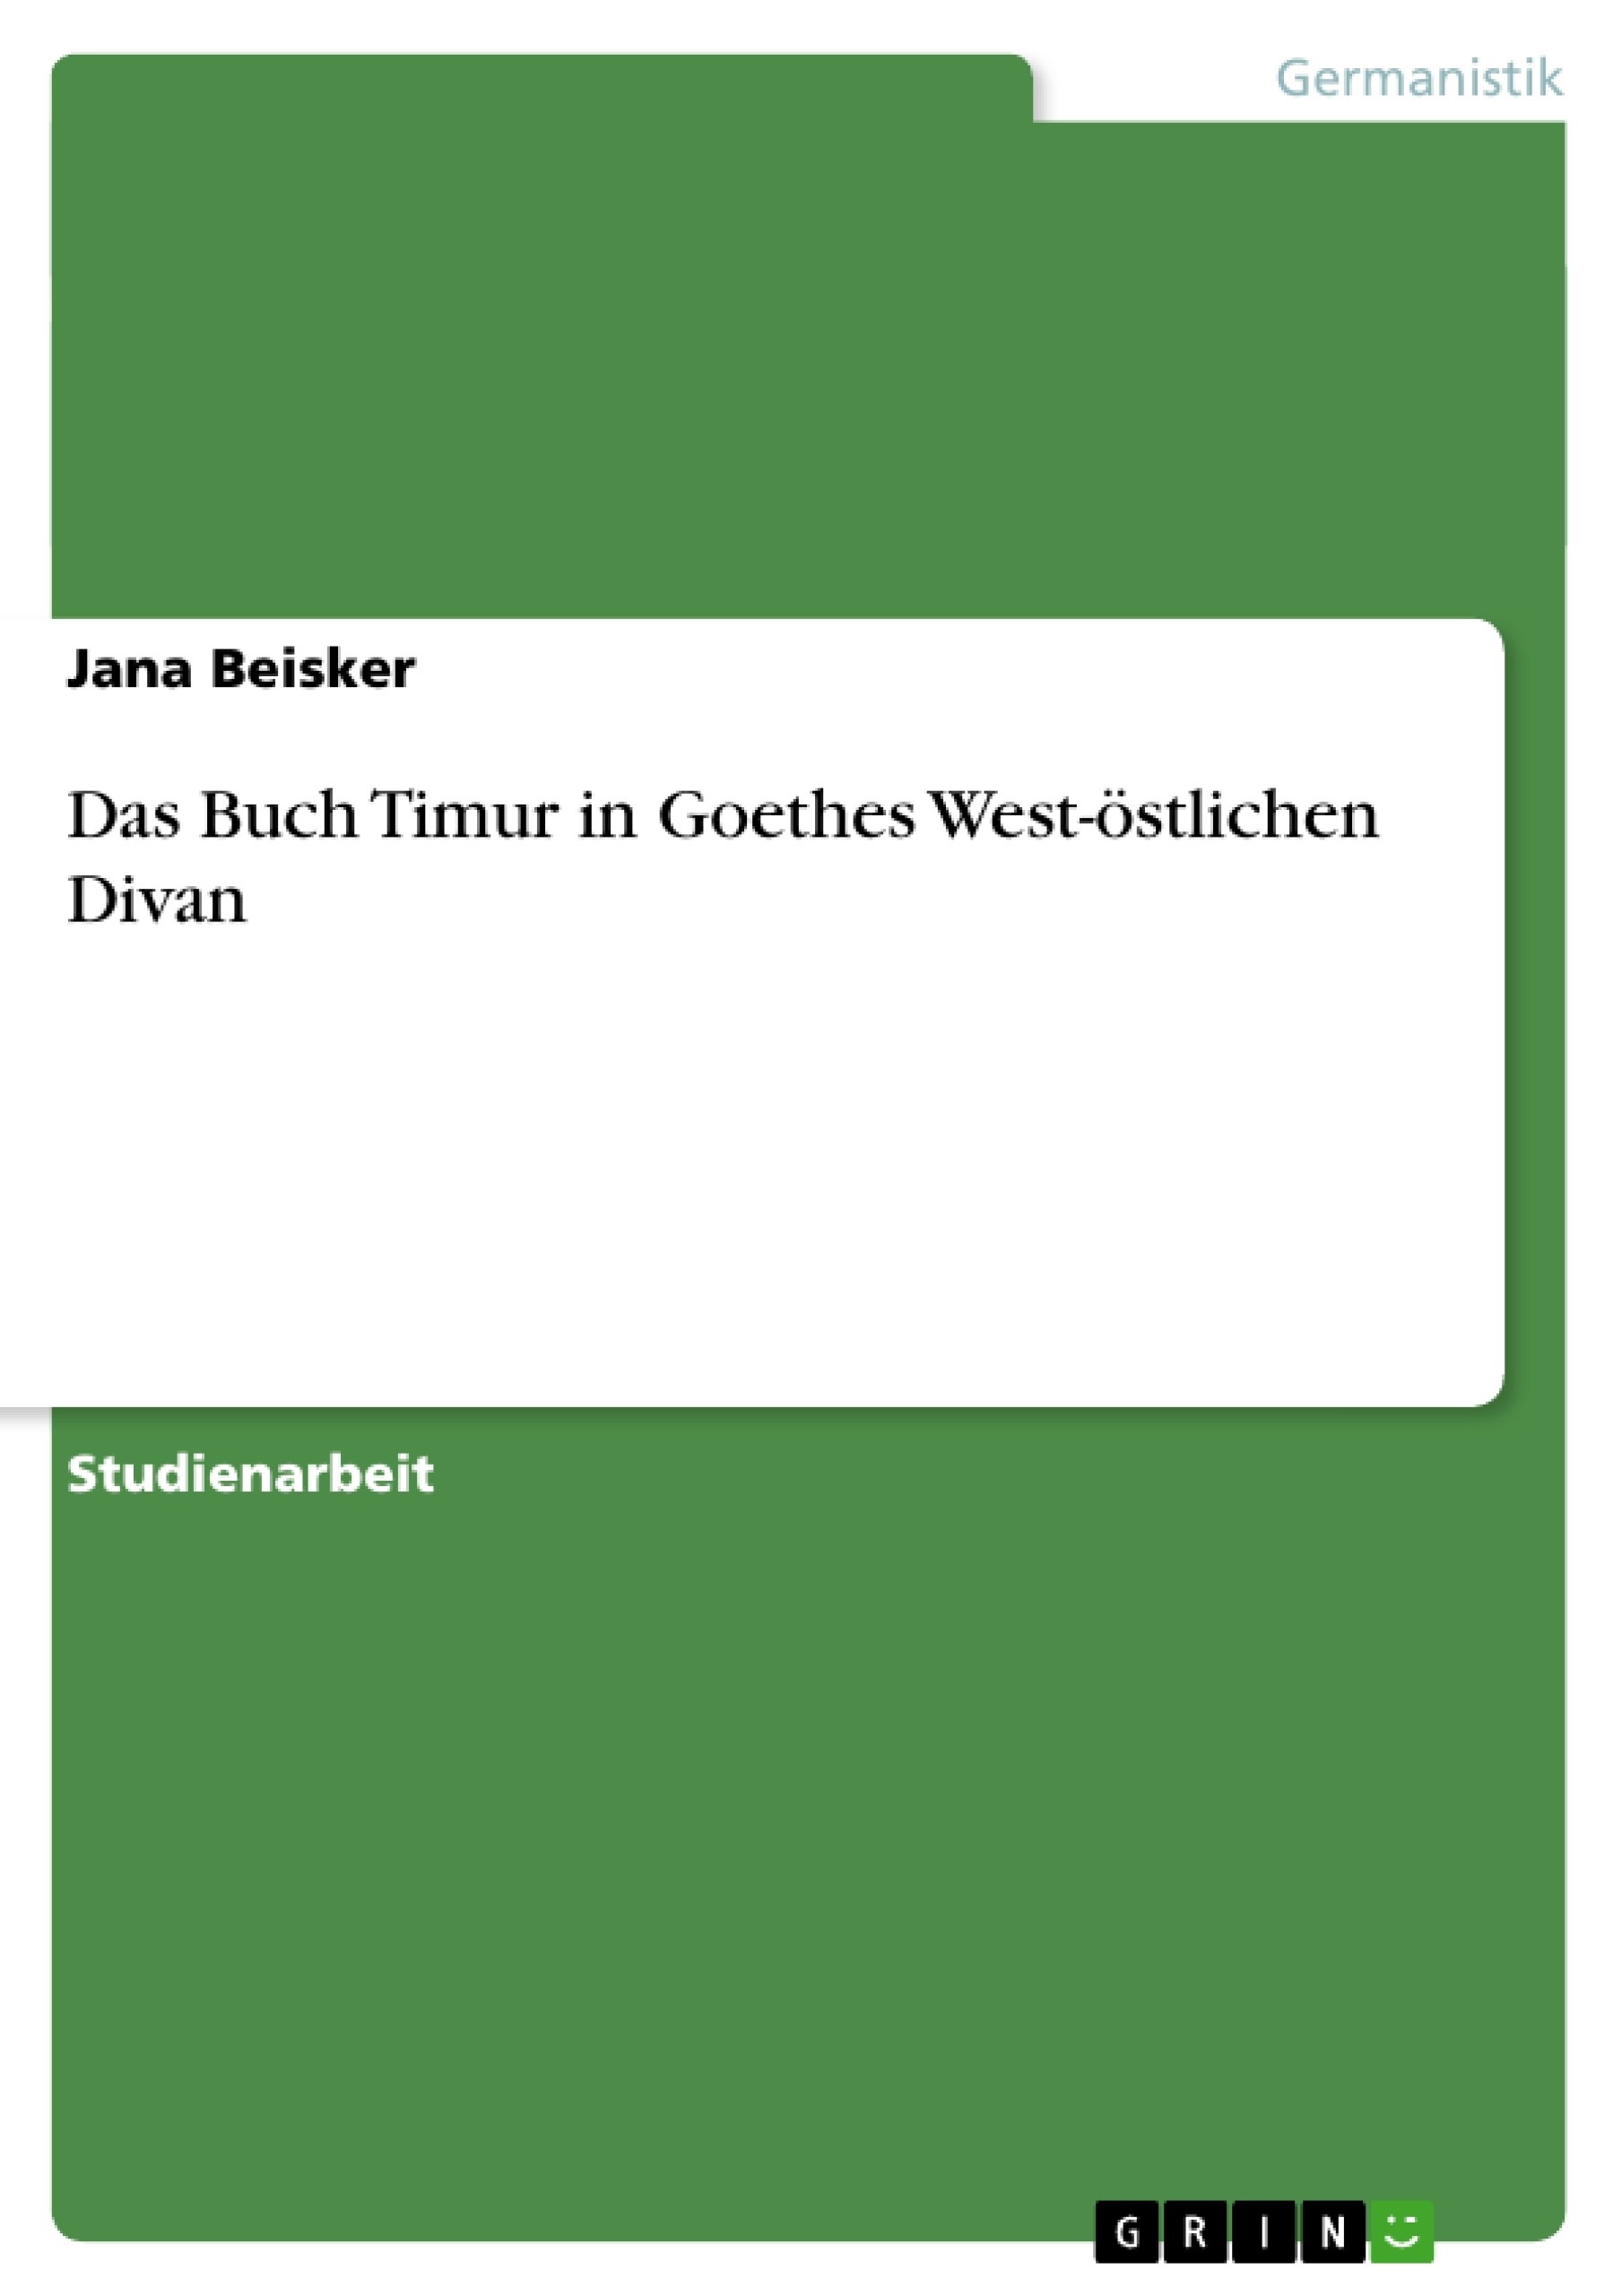 Titre: Das Buch Timur in Goethes West-östlichen Divan